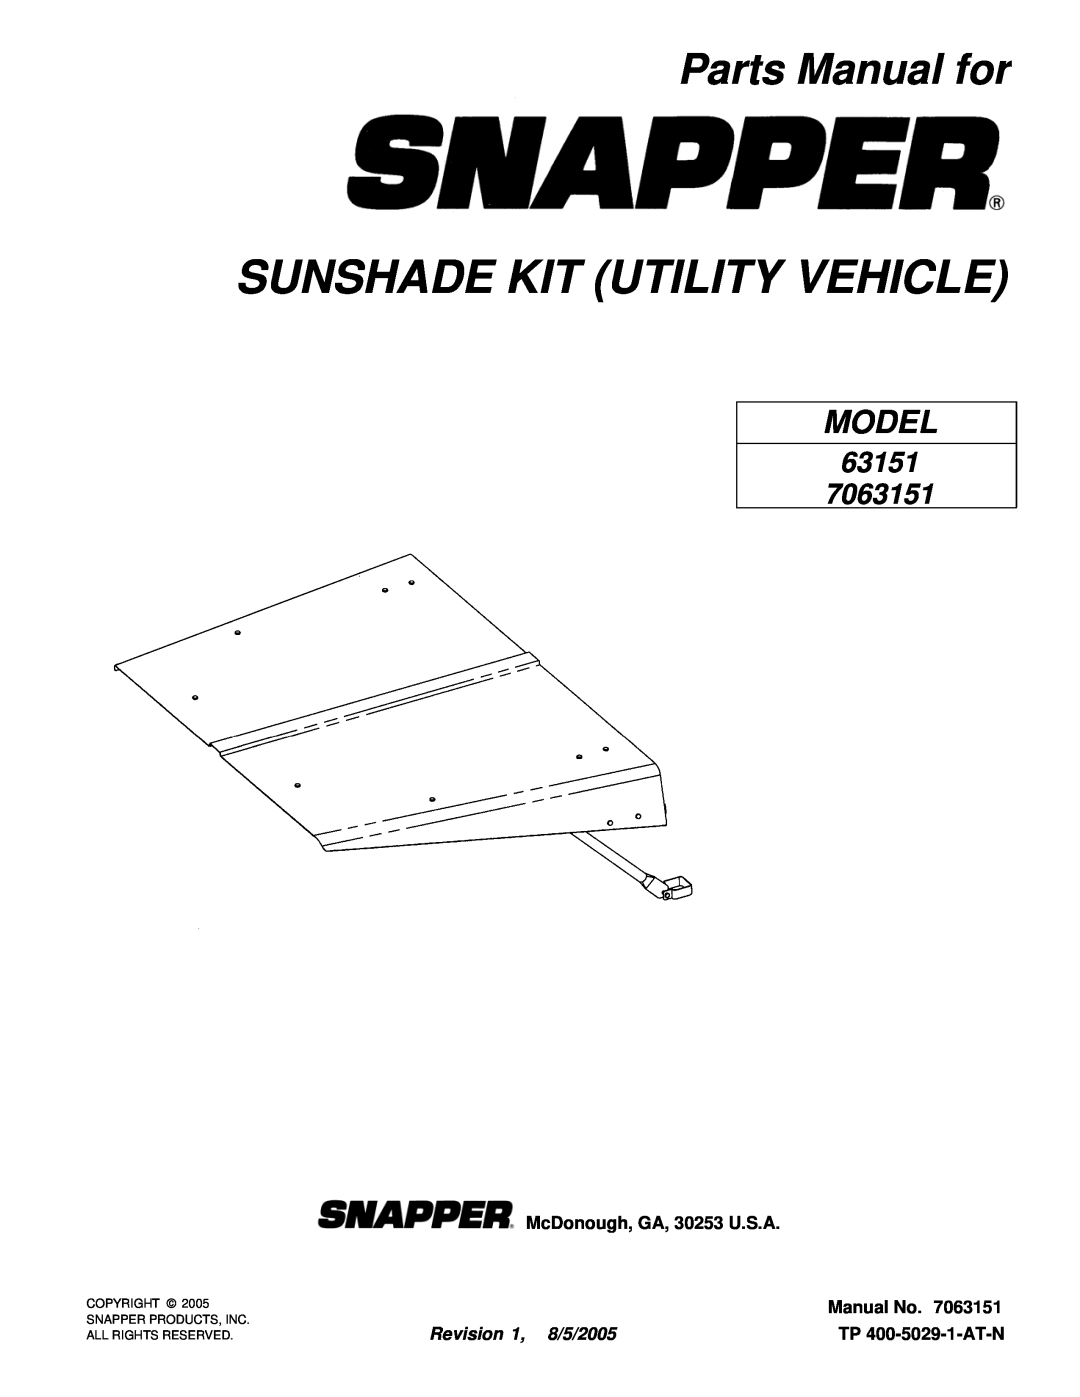 Snapper 7063151 manual Parts Manual for, McDonough, GA, 30253 U.S.A, Manual No, Revision 1, 8/5/2005, TP 400-5029-1-AT-N 